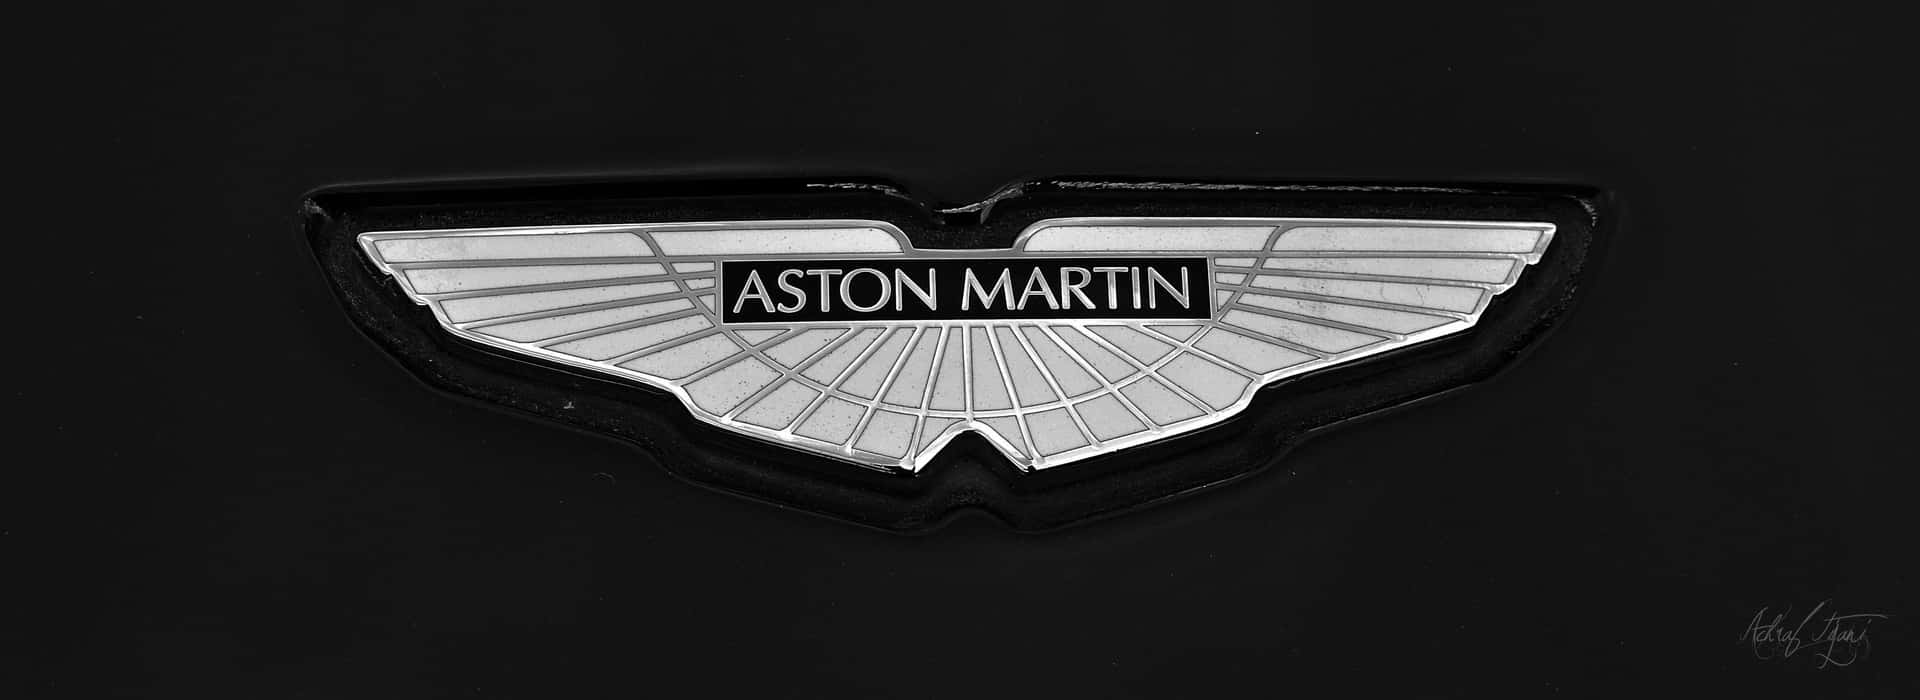 Goditiil Lusso Di Una Aston Martin